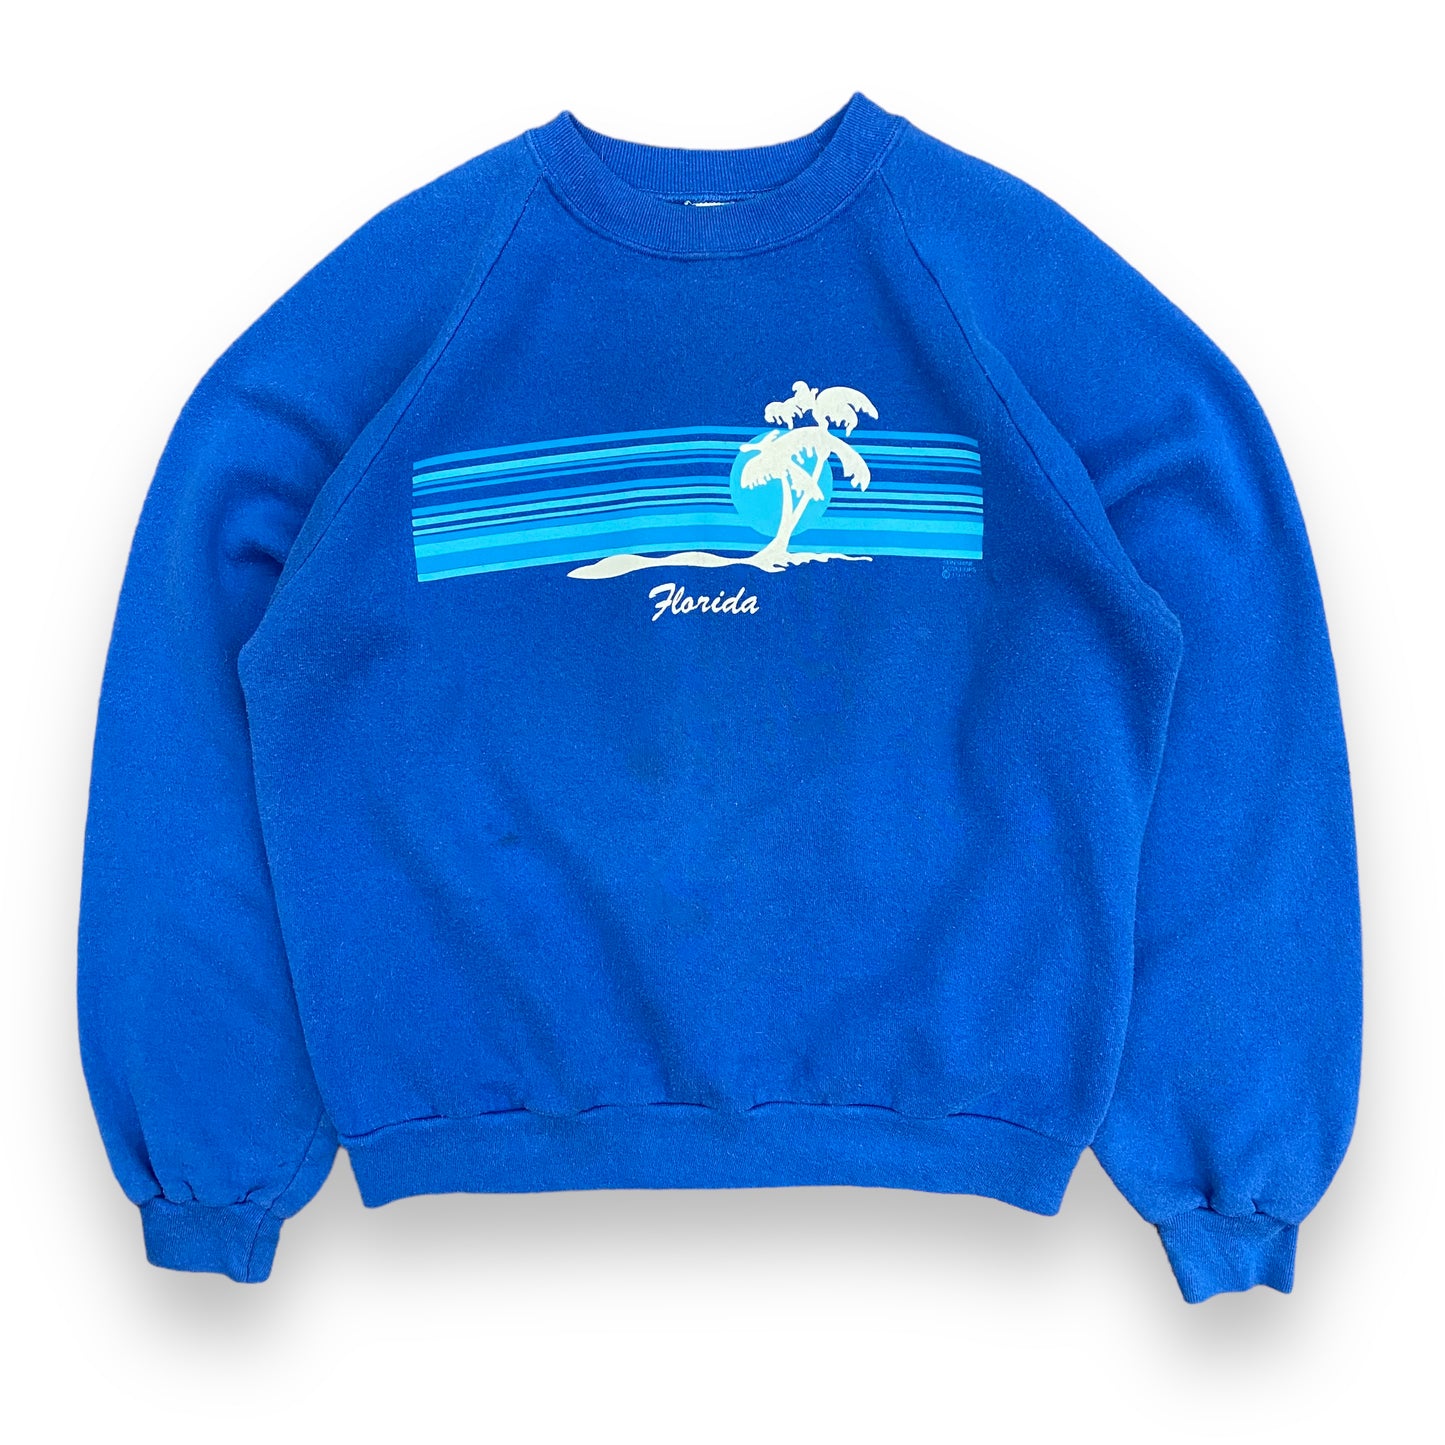 1980s "Florida" Blue Raglan Sweatshirt - Size Large